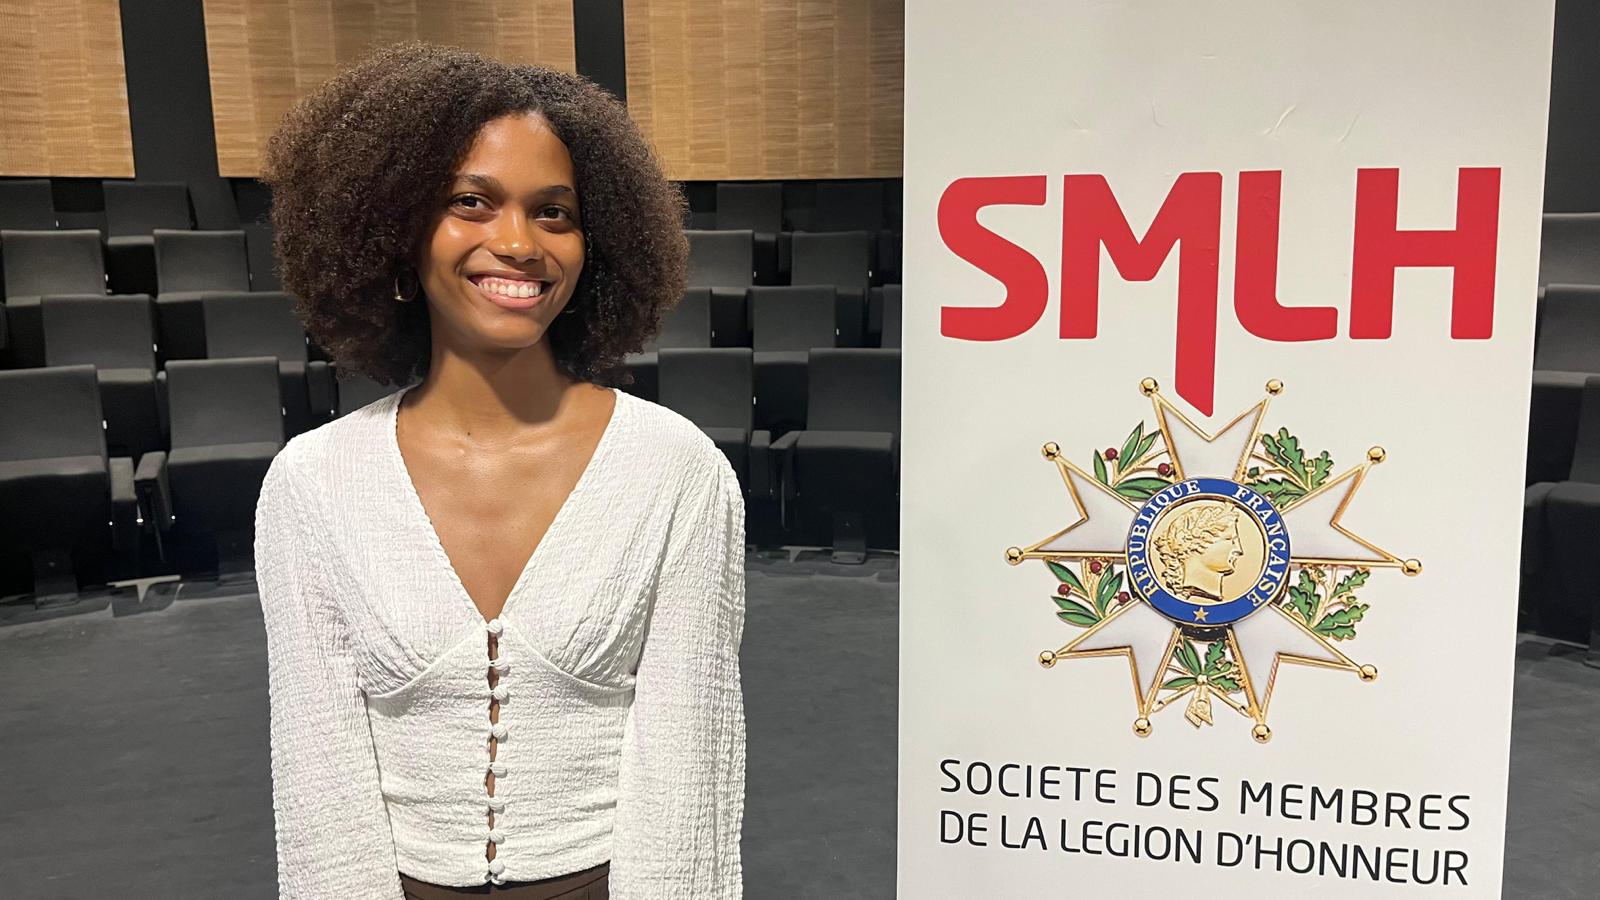     Clara Joseph, bachelière et lauréate du Prix de la légion d’honneur Martinique

